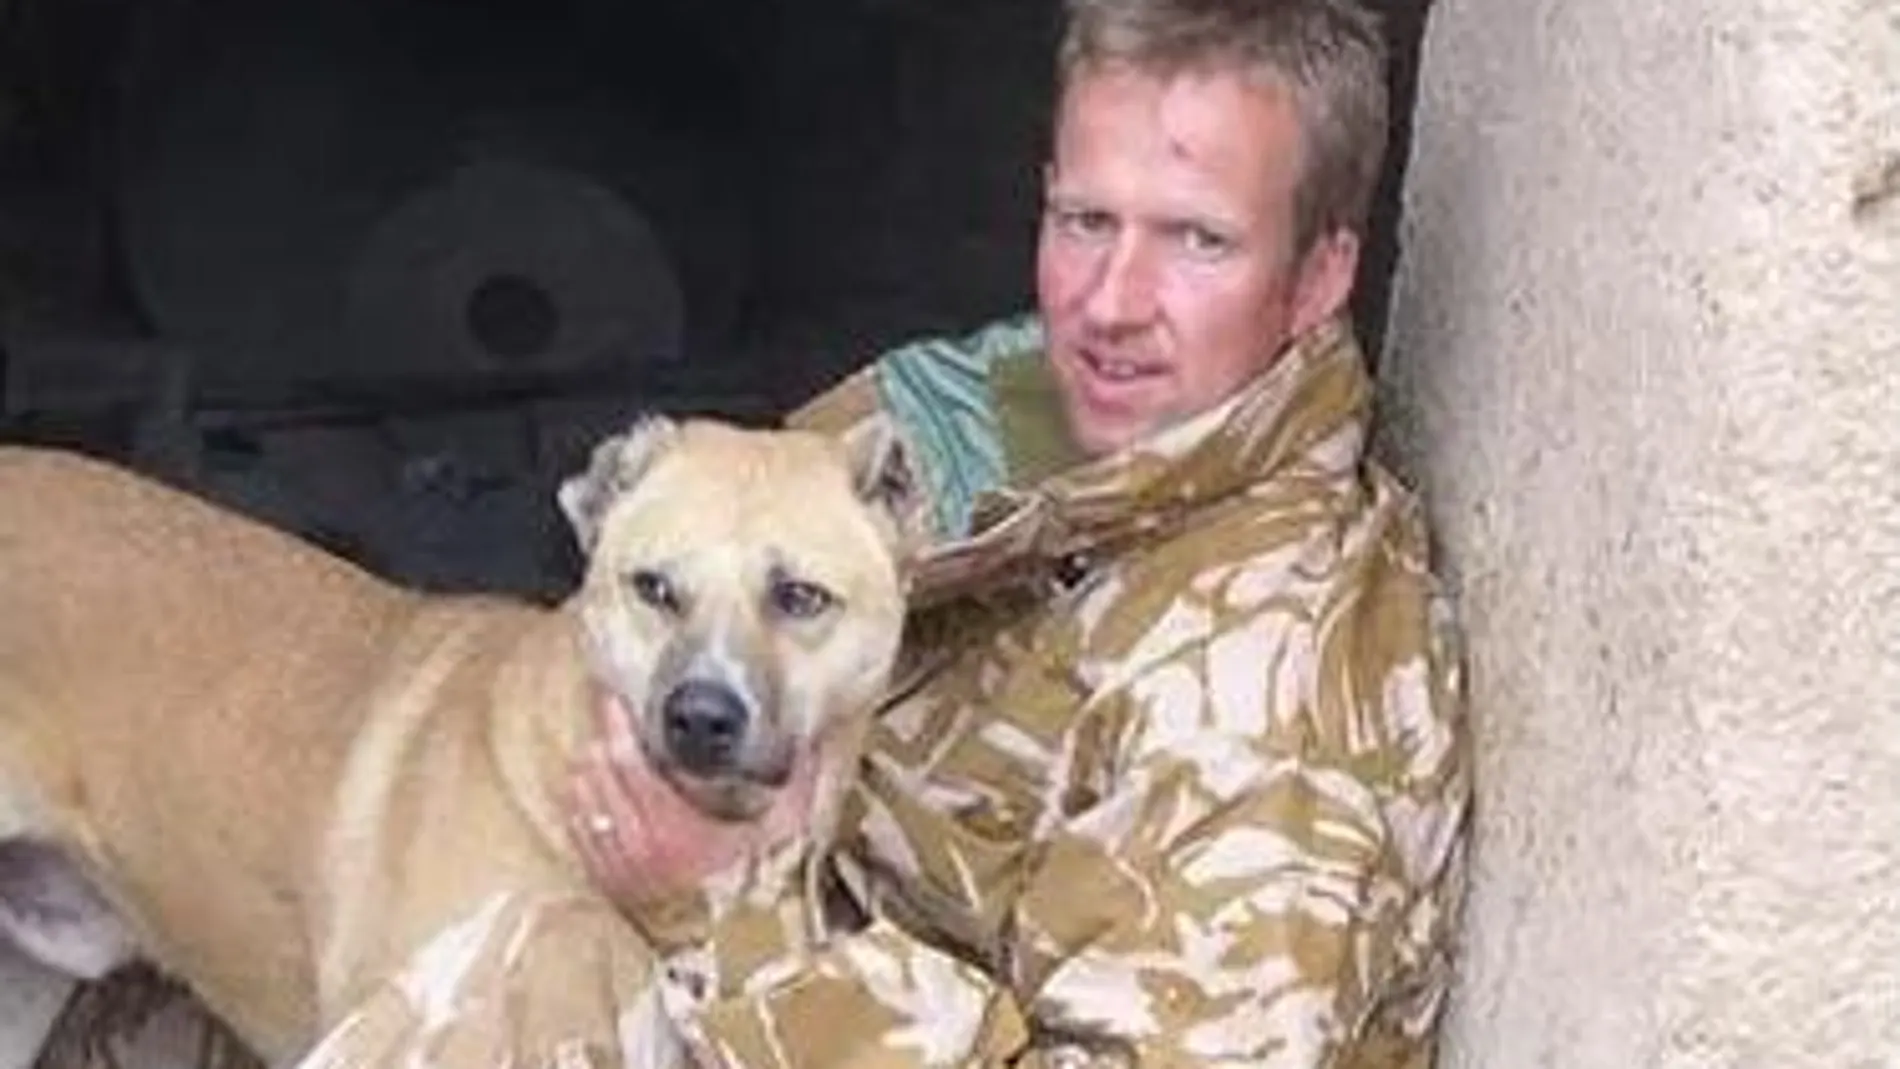 Paul “Pen” Farthing aterrizó en Afganistán en 2006 como parte de las operaciones militares de Reino Unido